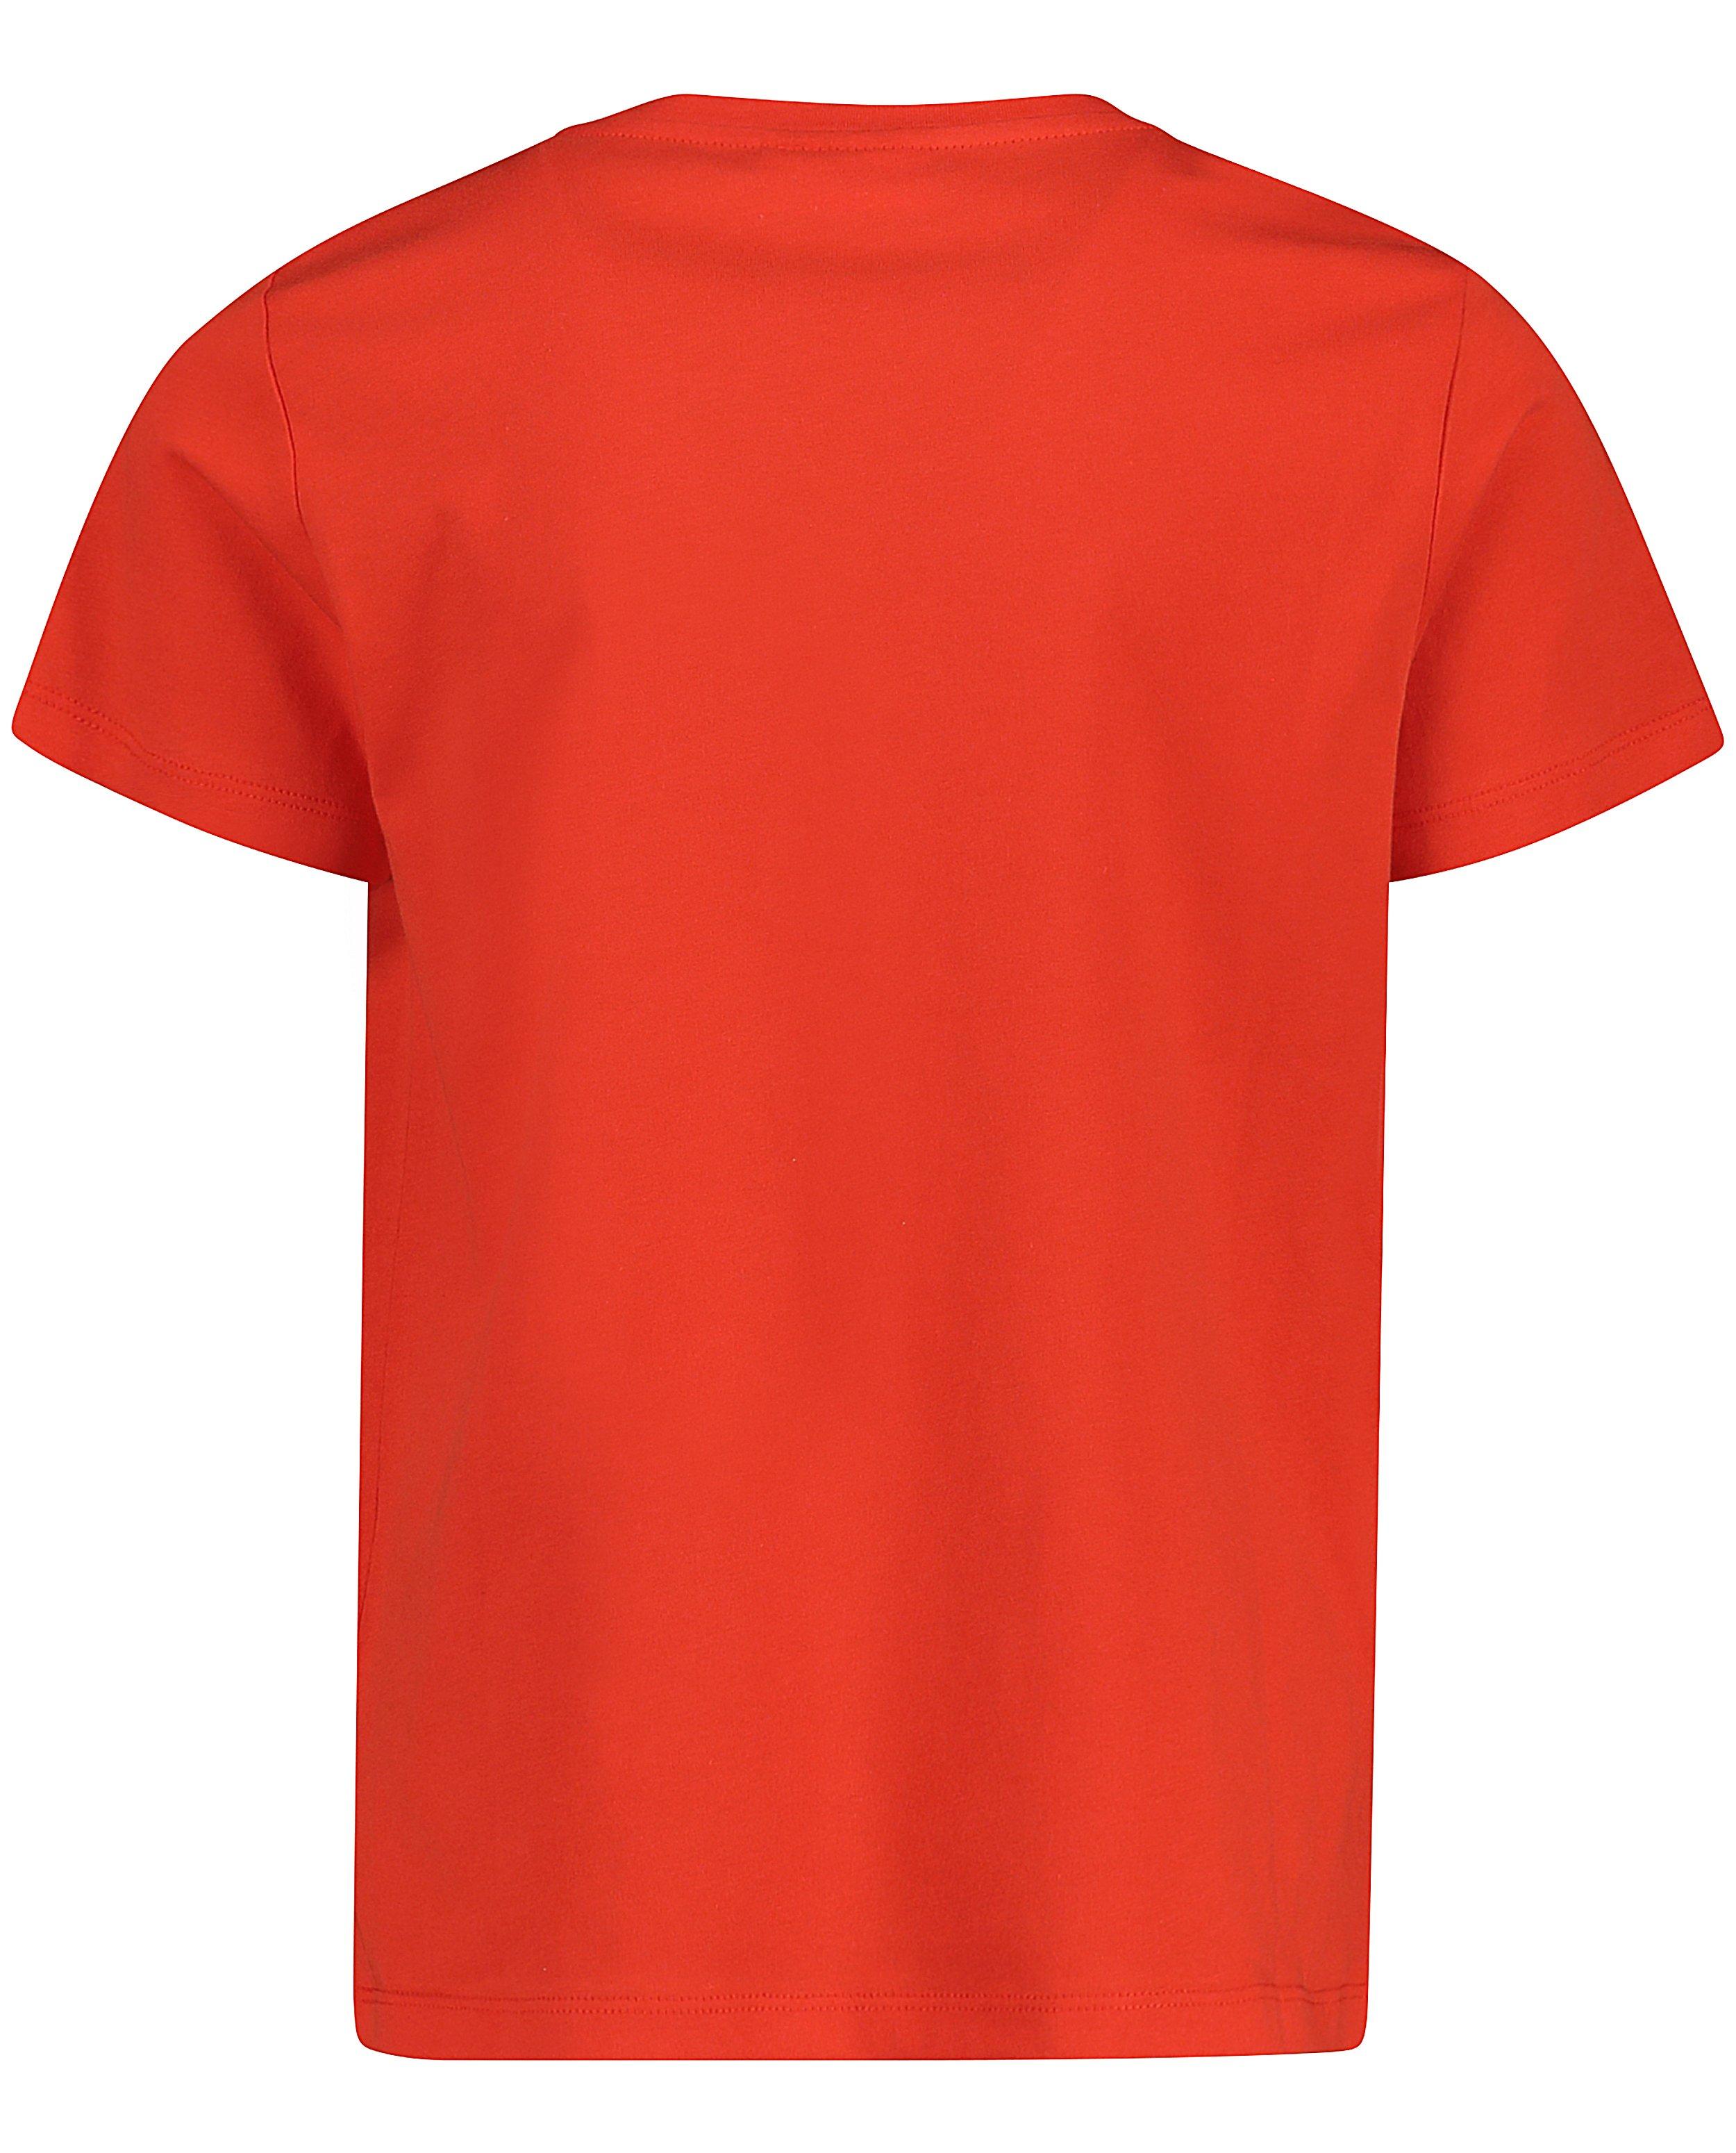 T-shirts - Rood T-shirt met opschrift #LikeMe